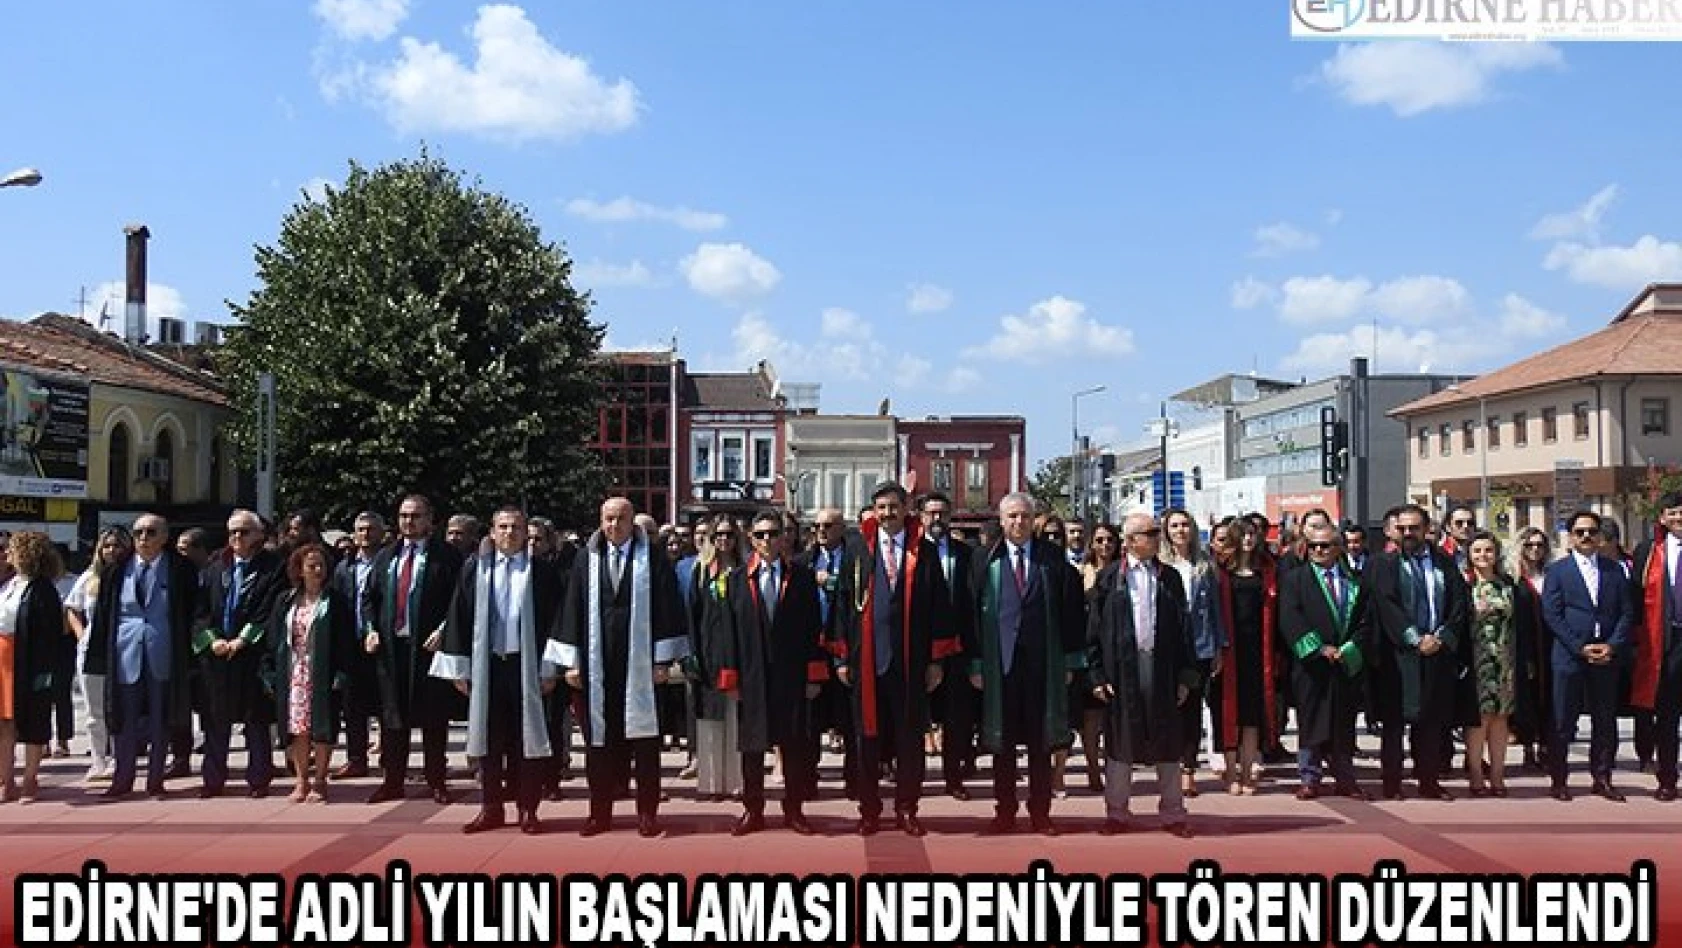 Edirne'de Adli yılın başlaması nedeniyle tören düzenlendi